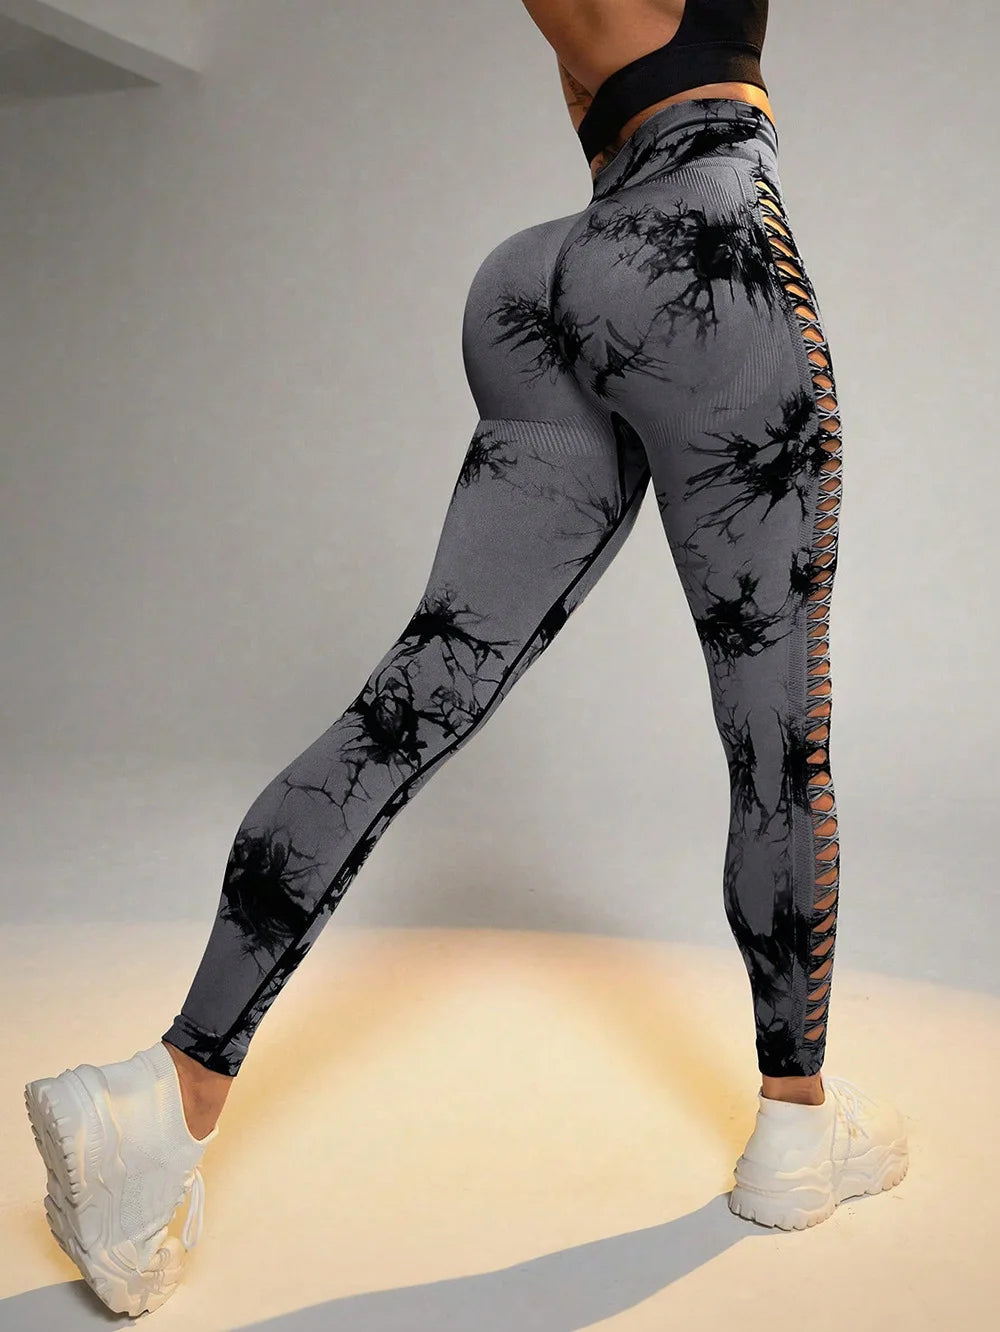 Yoga Tie Dye Hollow Pants Fitness Sportswear.